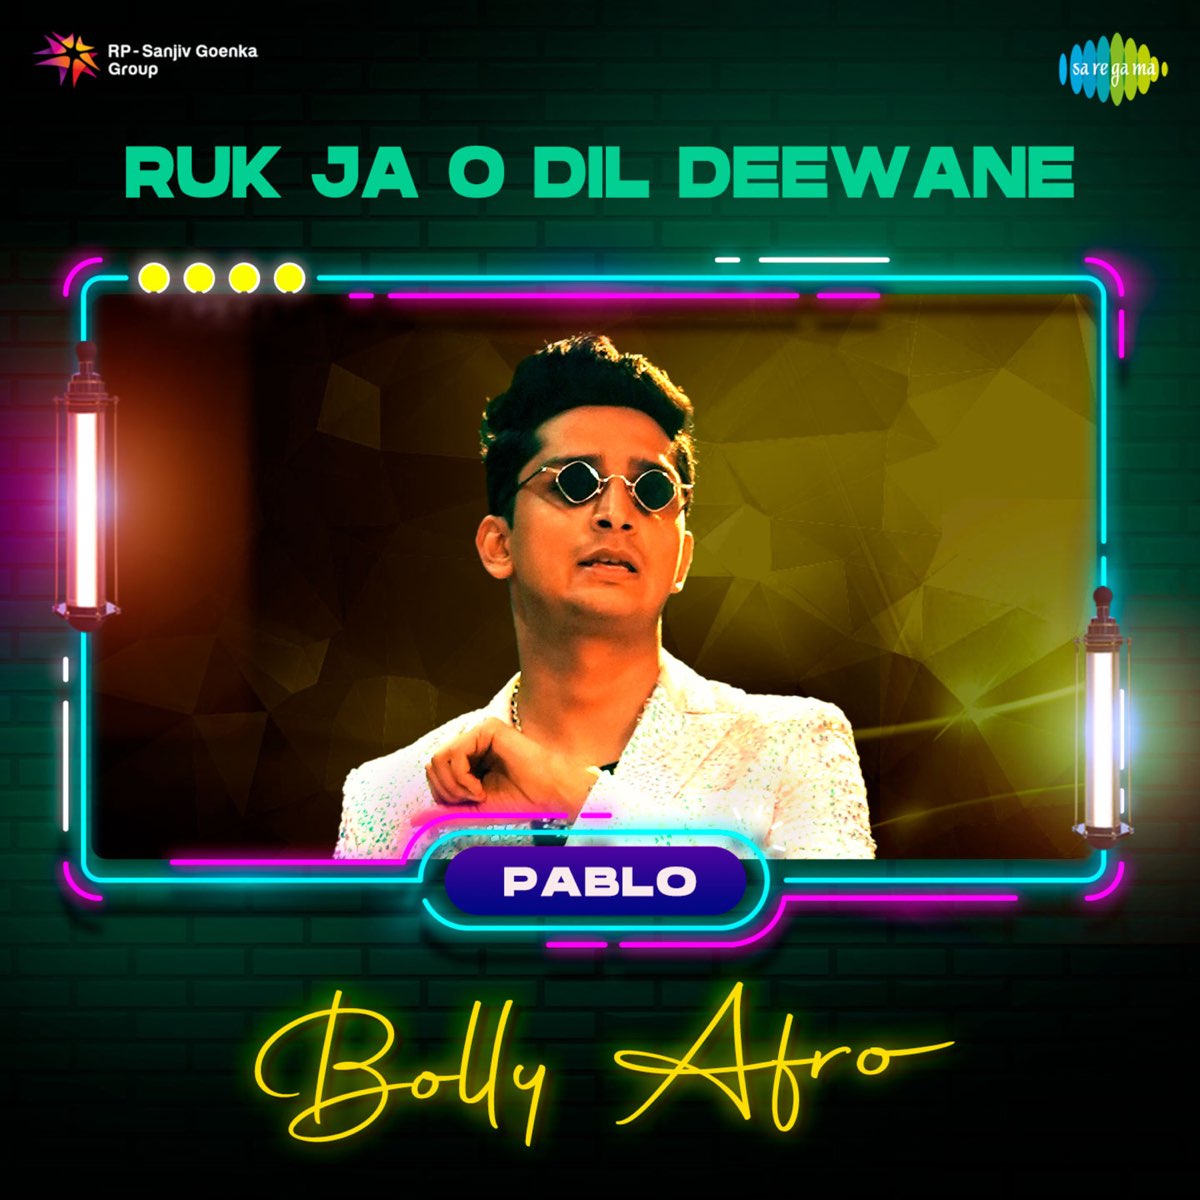 Ruk Ja O Dil Deewane (From "Dilwale Dulhania Le Jayenge") [Bolly Afro] -  Single – Album par Udit Narayan, Jatin - Lalit & Anand Bakshi – Apple Music